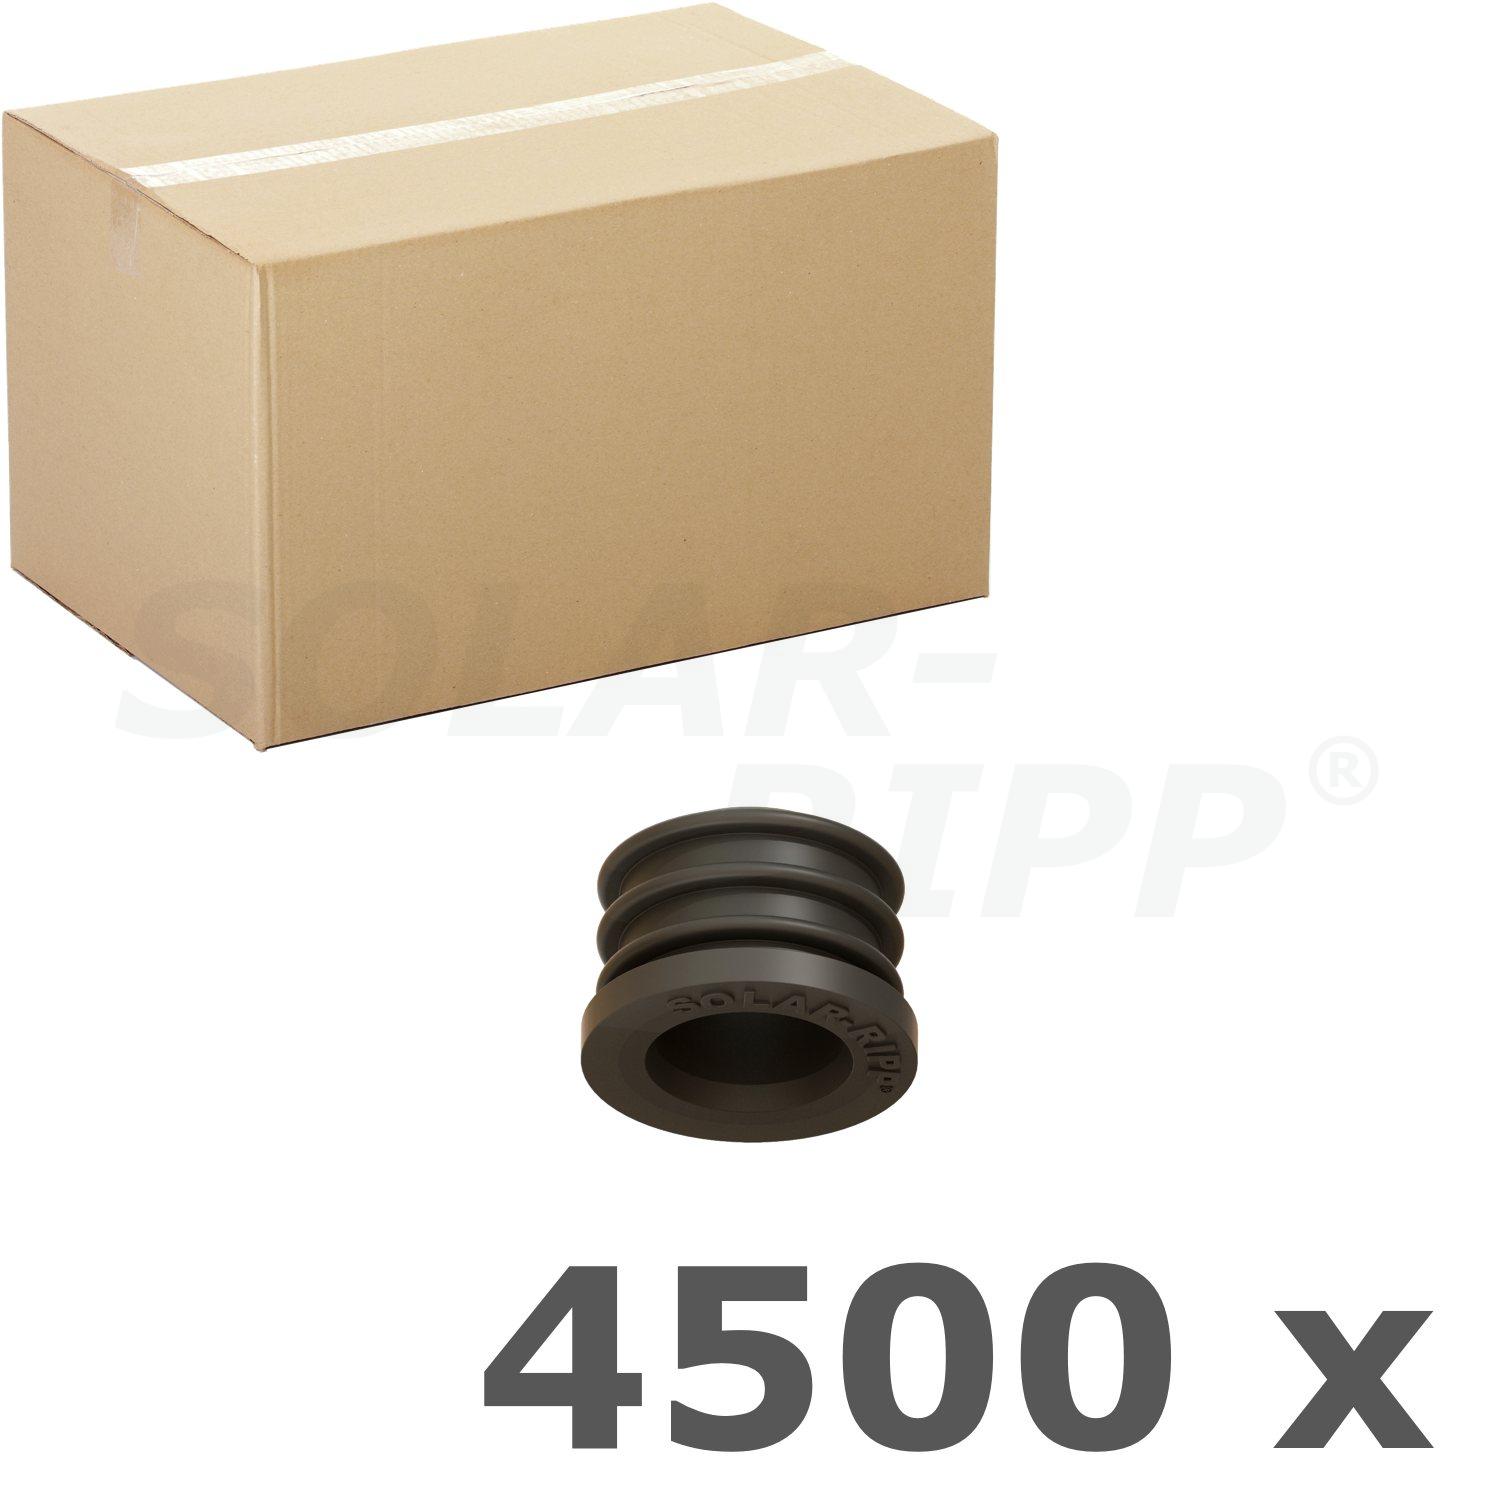 SOLAR-RIPP ® seal SRX - carton with 4,500 pcs.